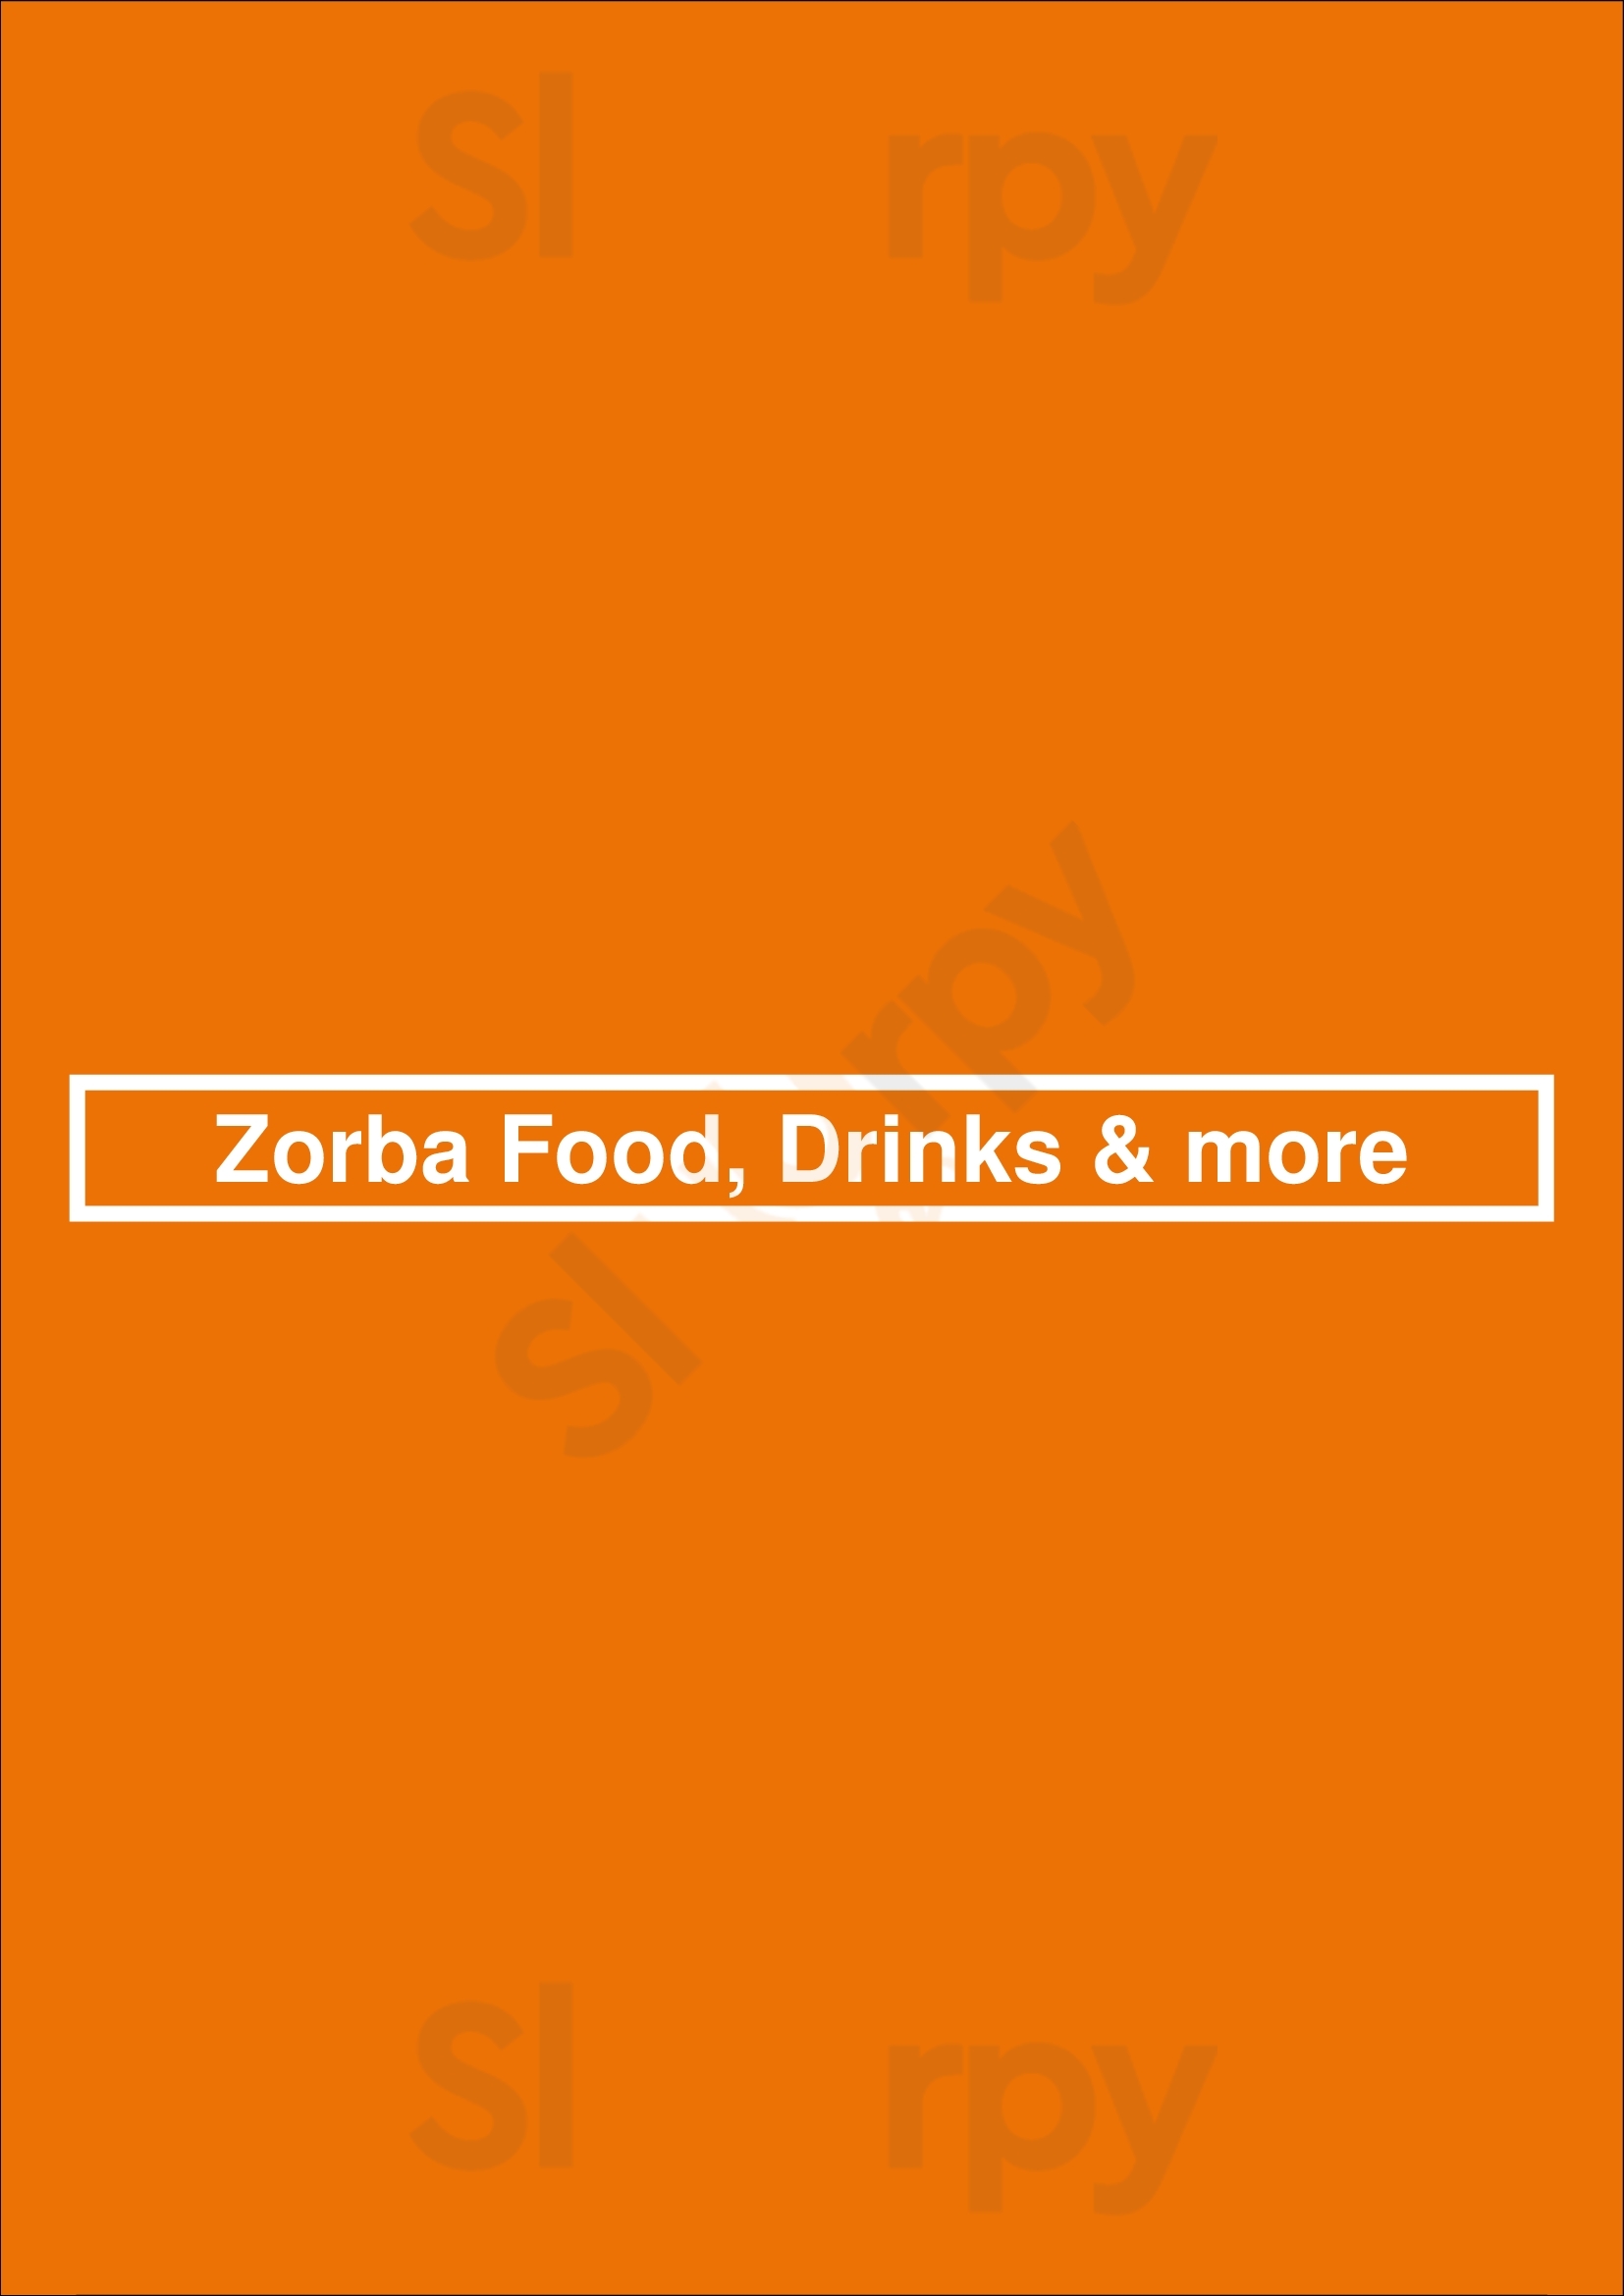 Zorba Food, Drinks & More Tilburg Menu - 1